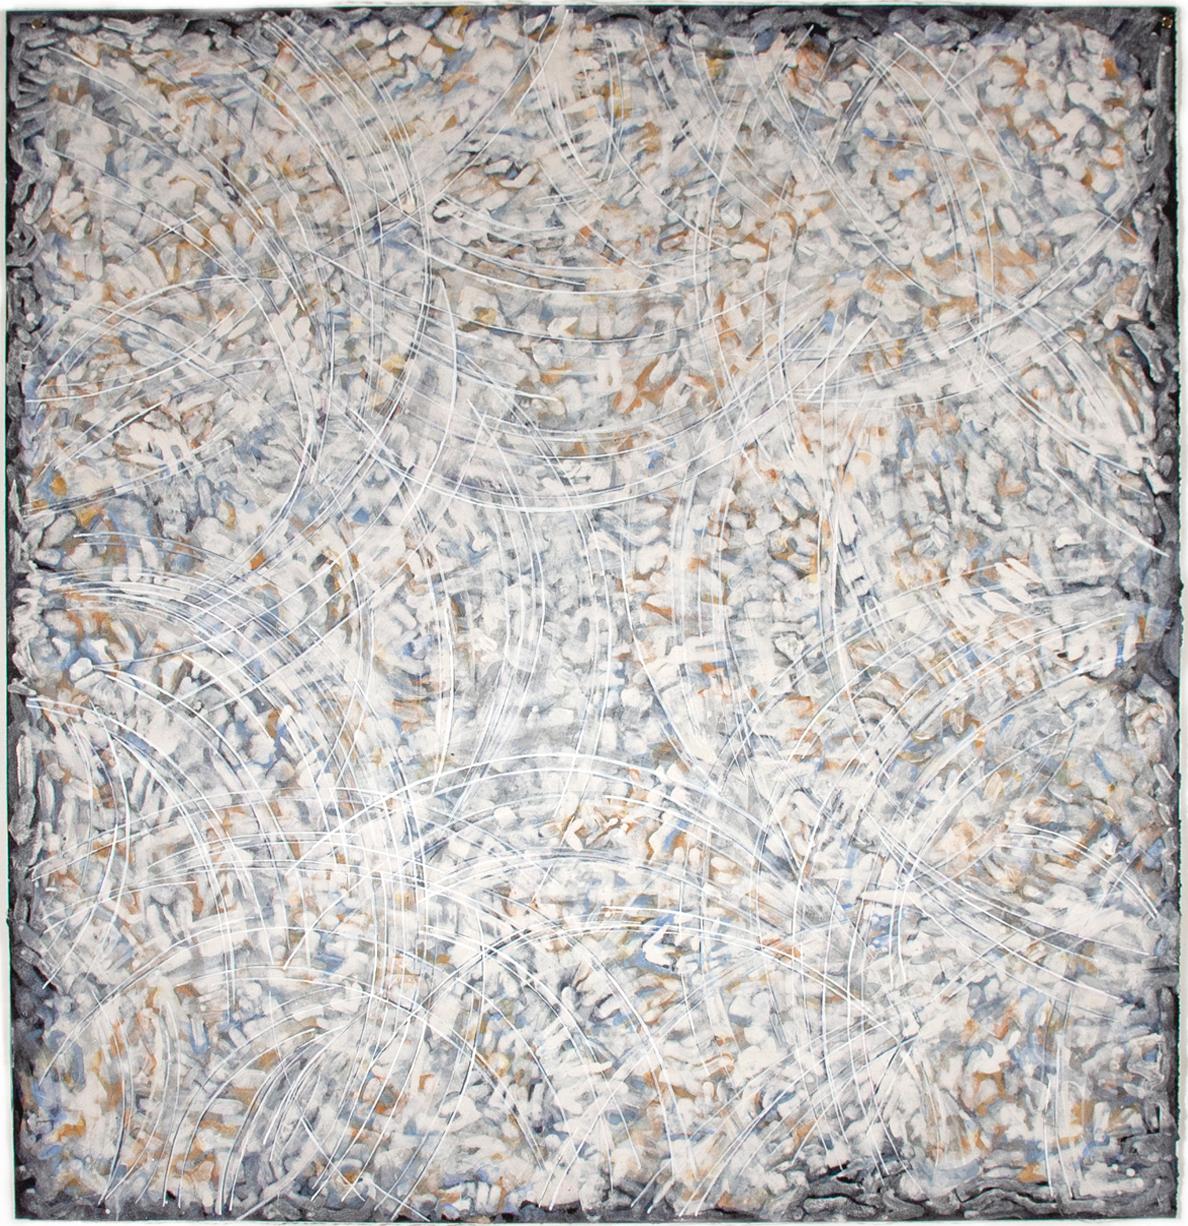 Francesca 9 : peinture abstraite aux tons terreux avec matériaux naturels sur papier noir